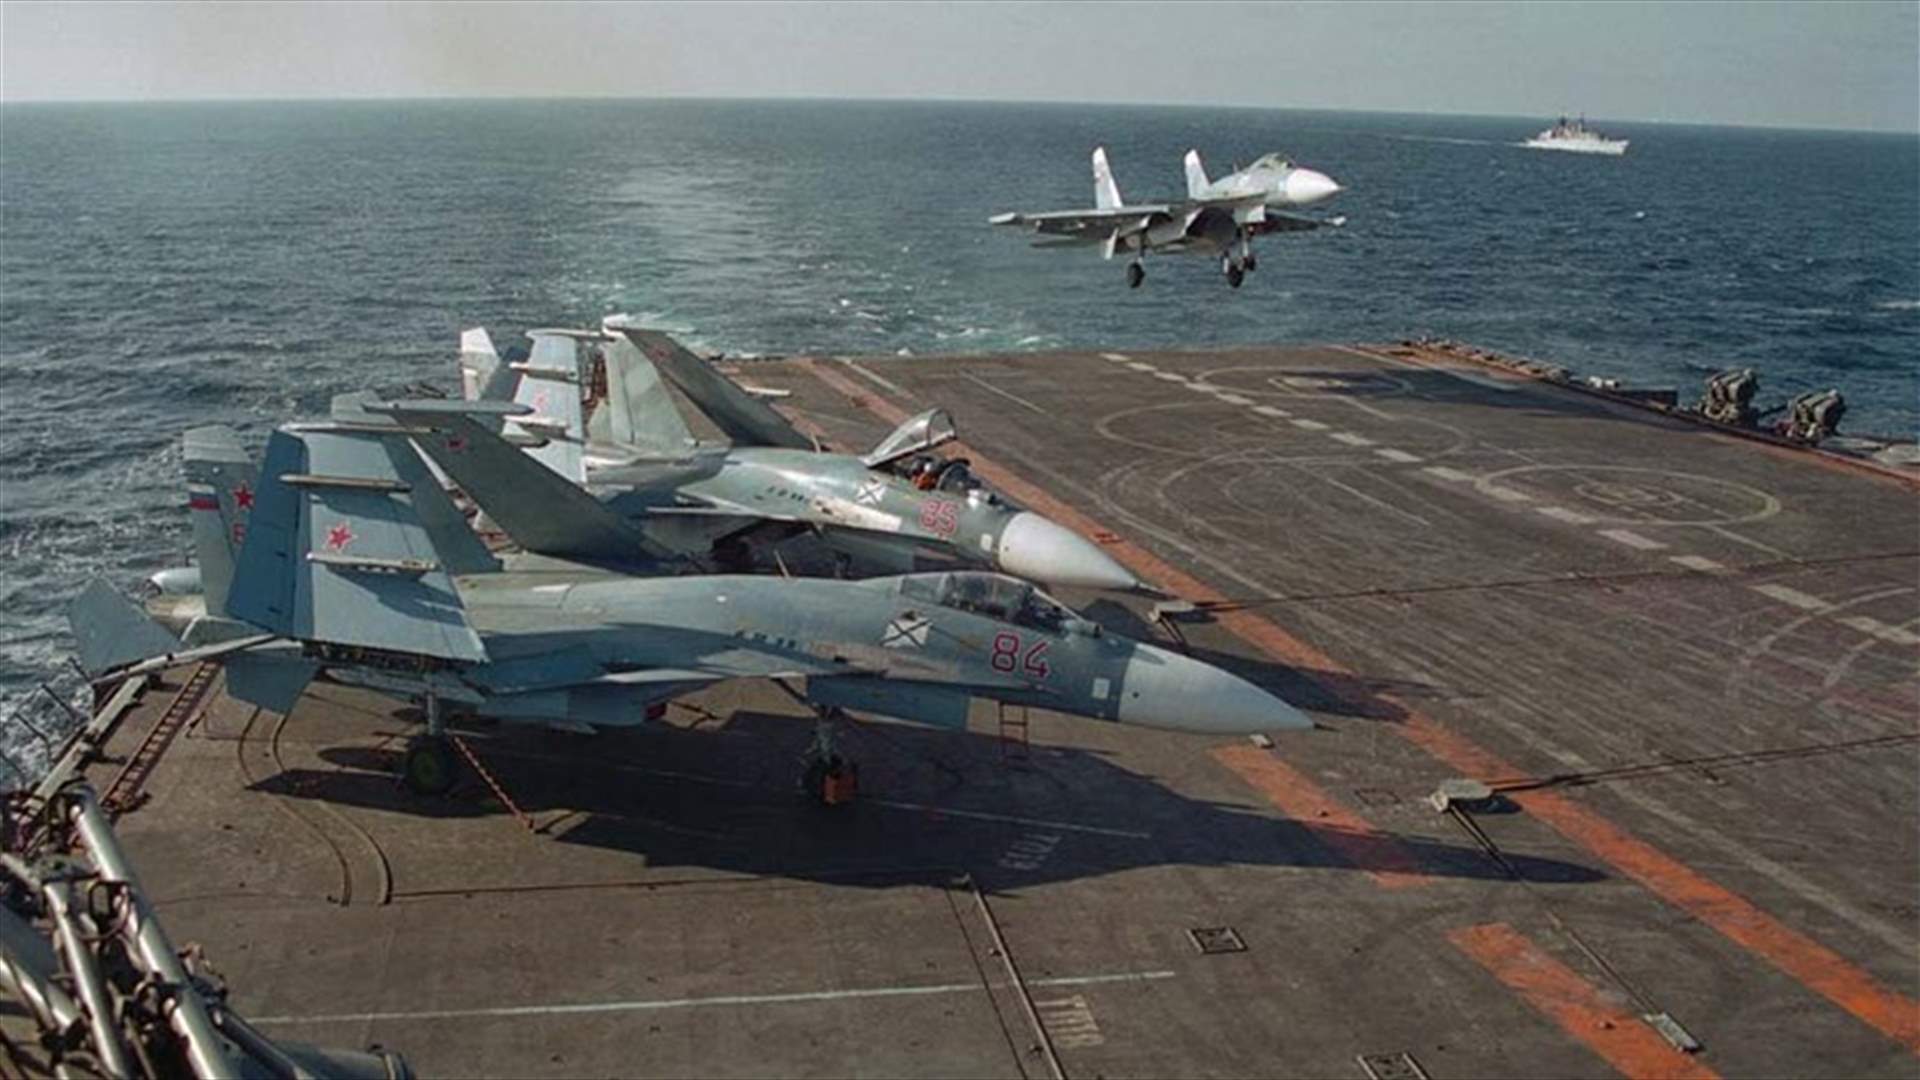 Russian warplane crashes in Mediterranean, pilot safe - agencies